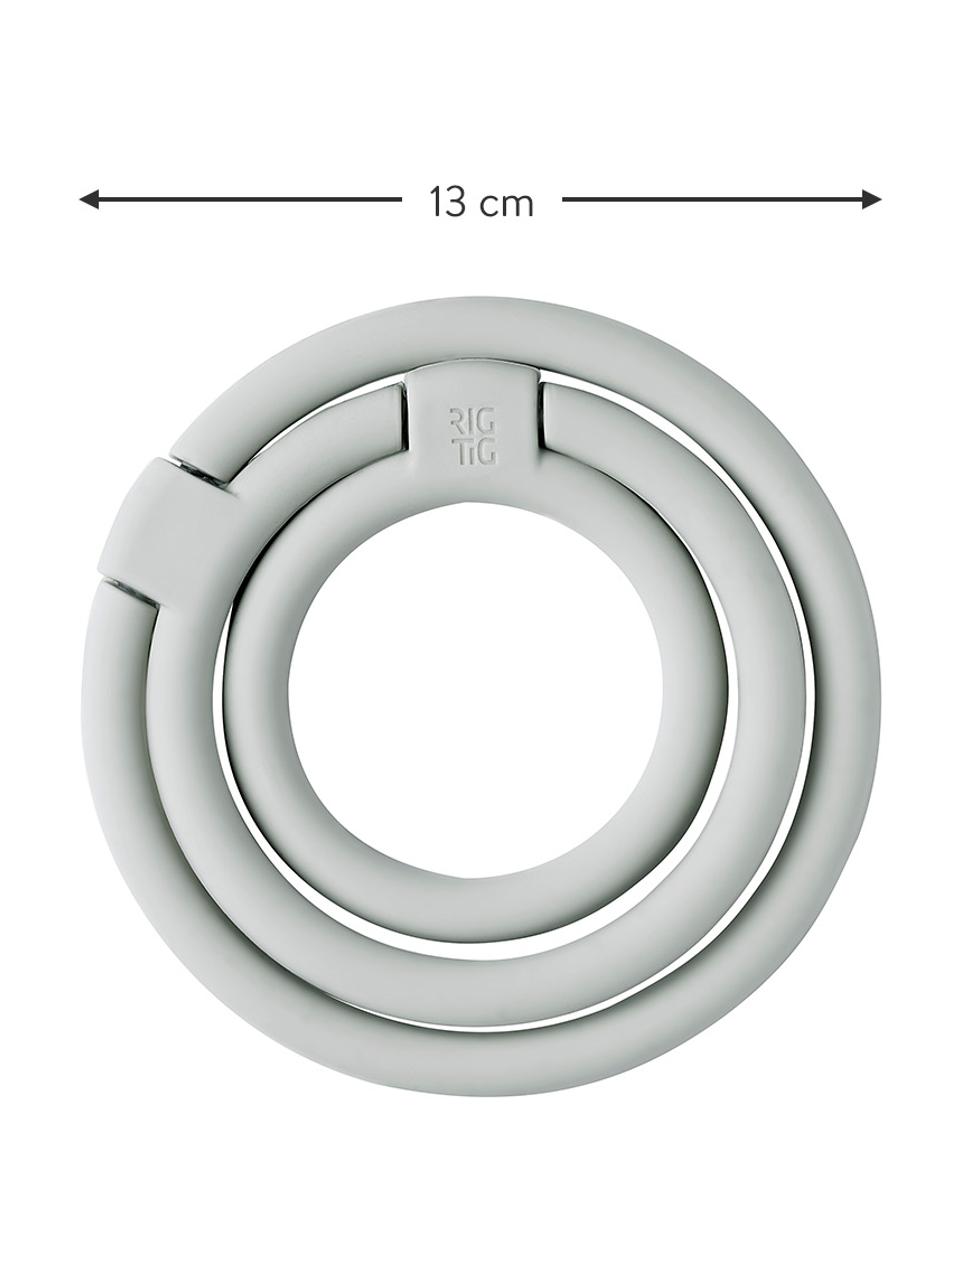 Dessous-de-plat en silicone gris Circles, différentes tailles, Silicone, nylon, Gris clair, Lot de différentes tailles